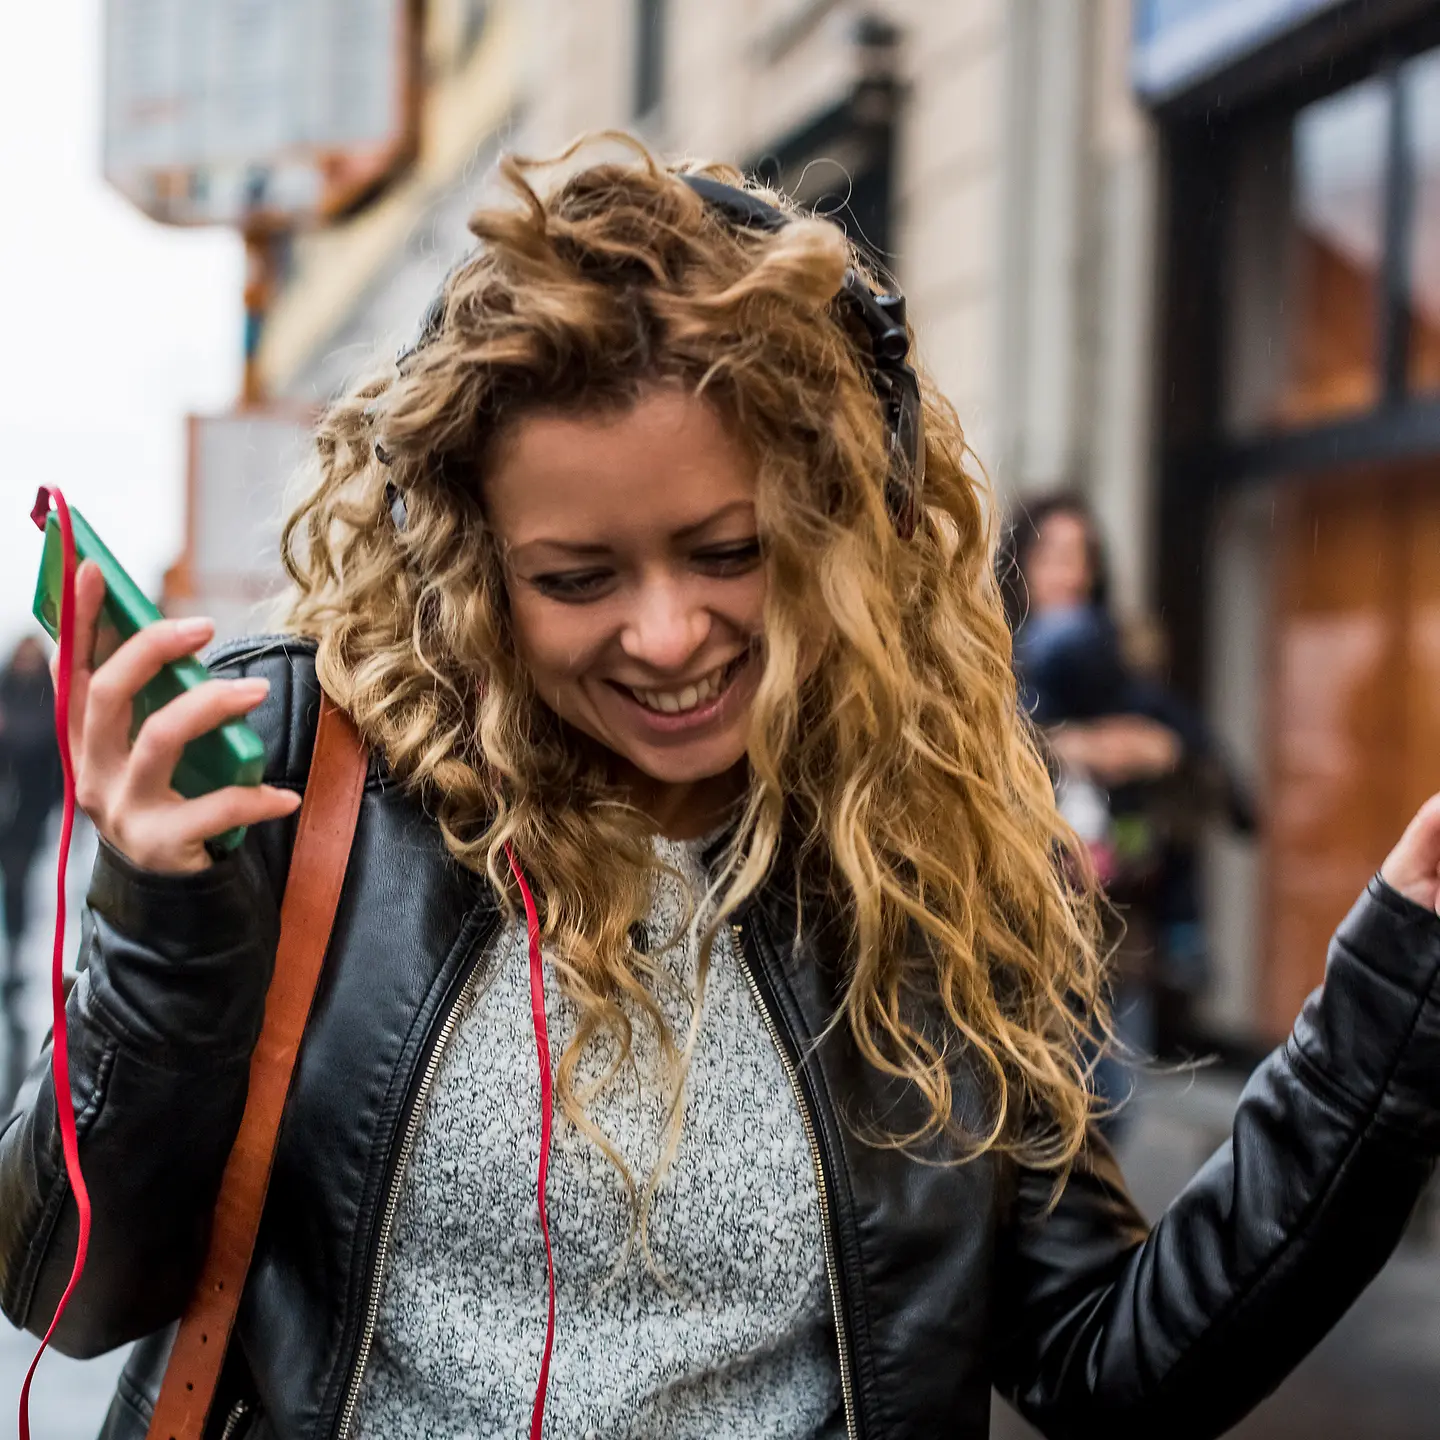 Eine junge Frau tanzt auf der Straße zur Musik aus ihrem Smartphone